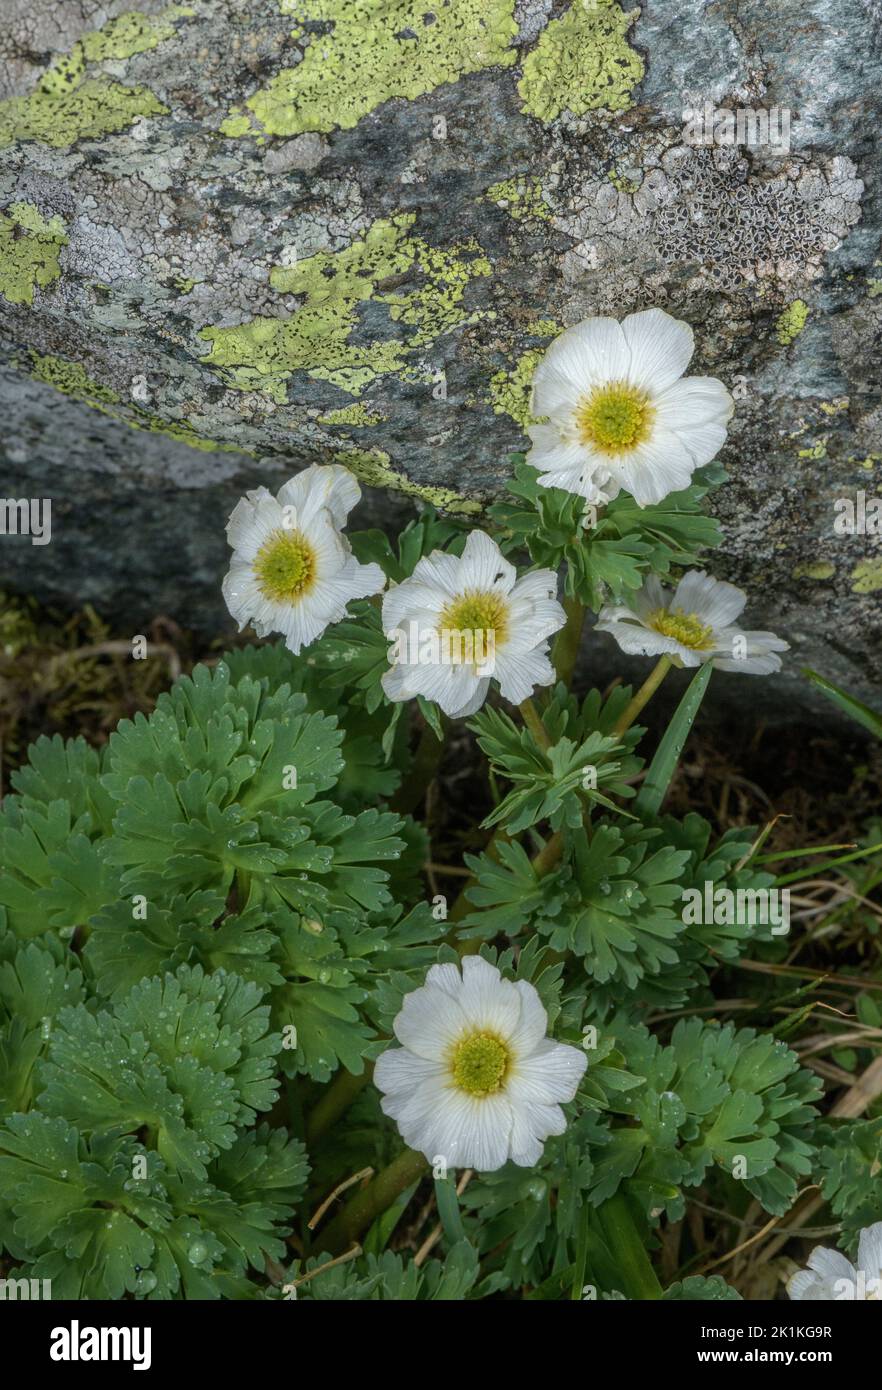 Coriander-leaved Callianthemum, Callianthemum coriandrifolium, in flower among rocks, Austrian Alps. Stock Photo